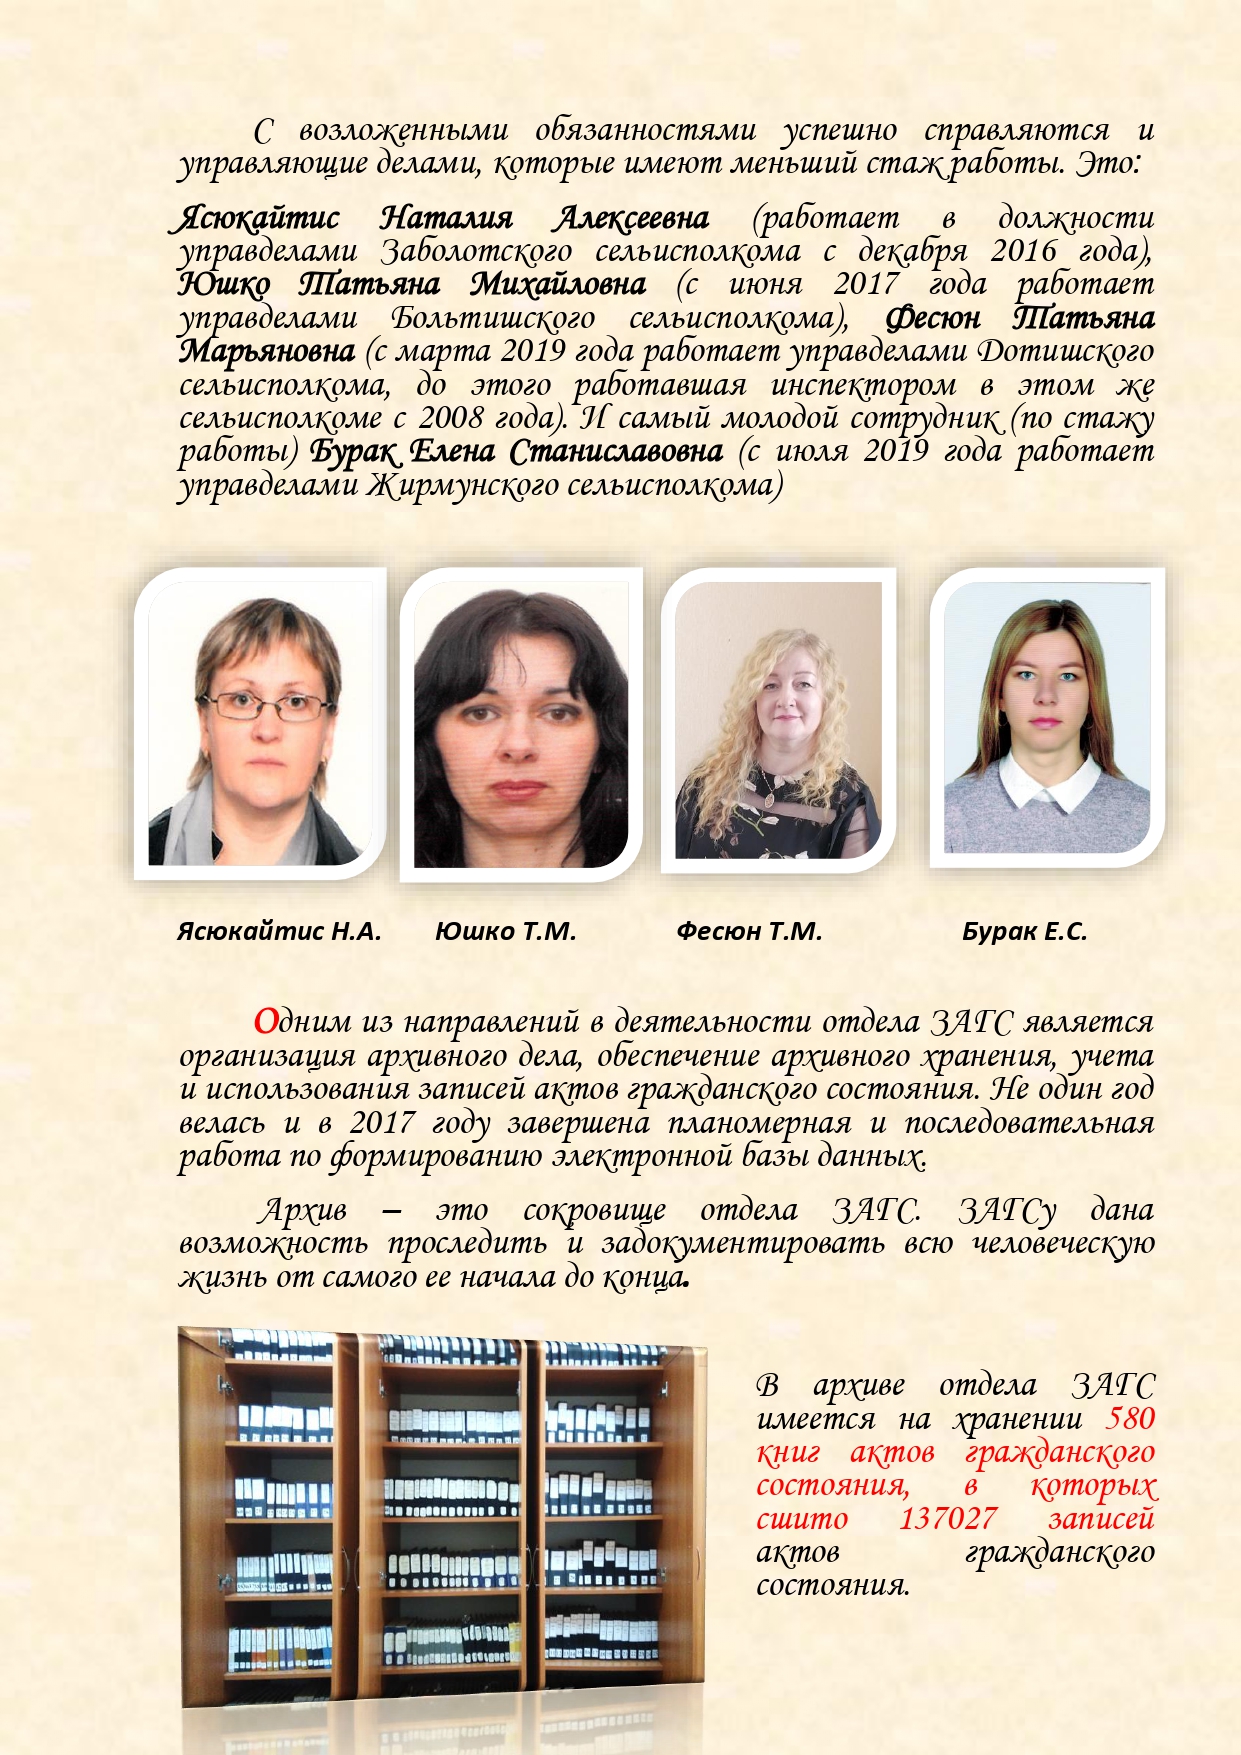 История органов загса Вороновского района с изменениями (1)_page-0014.jpg